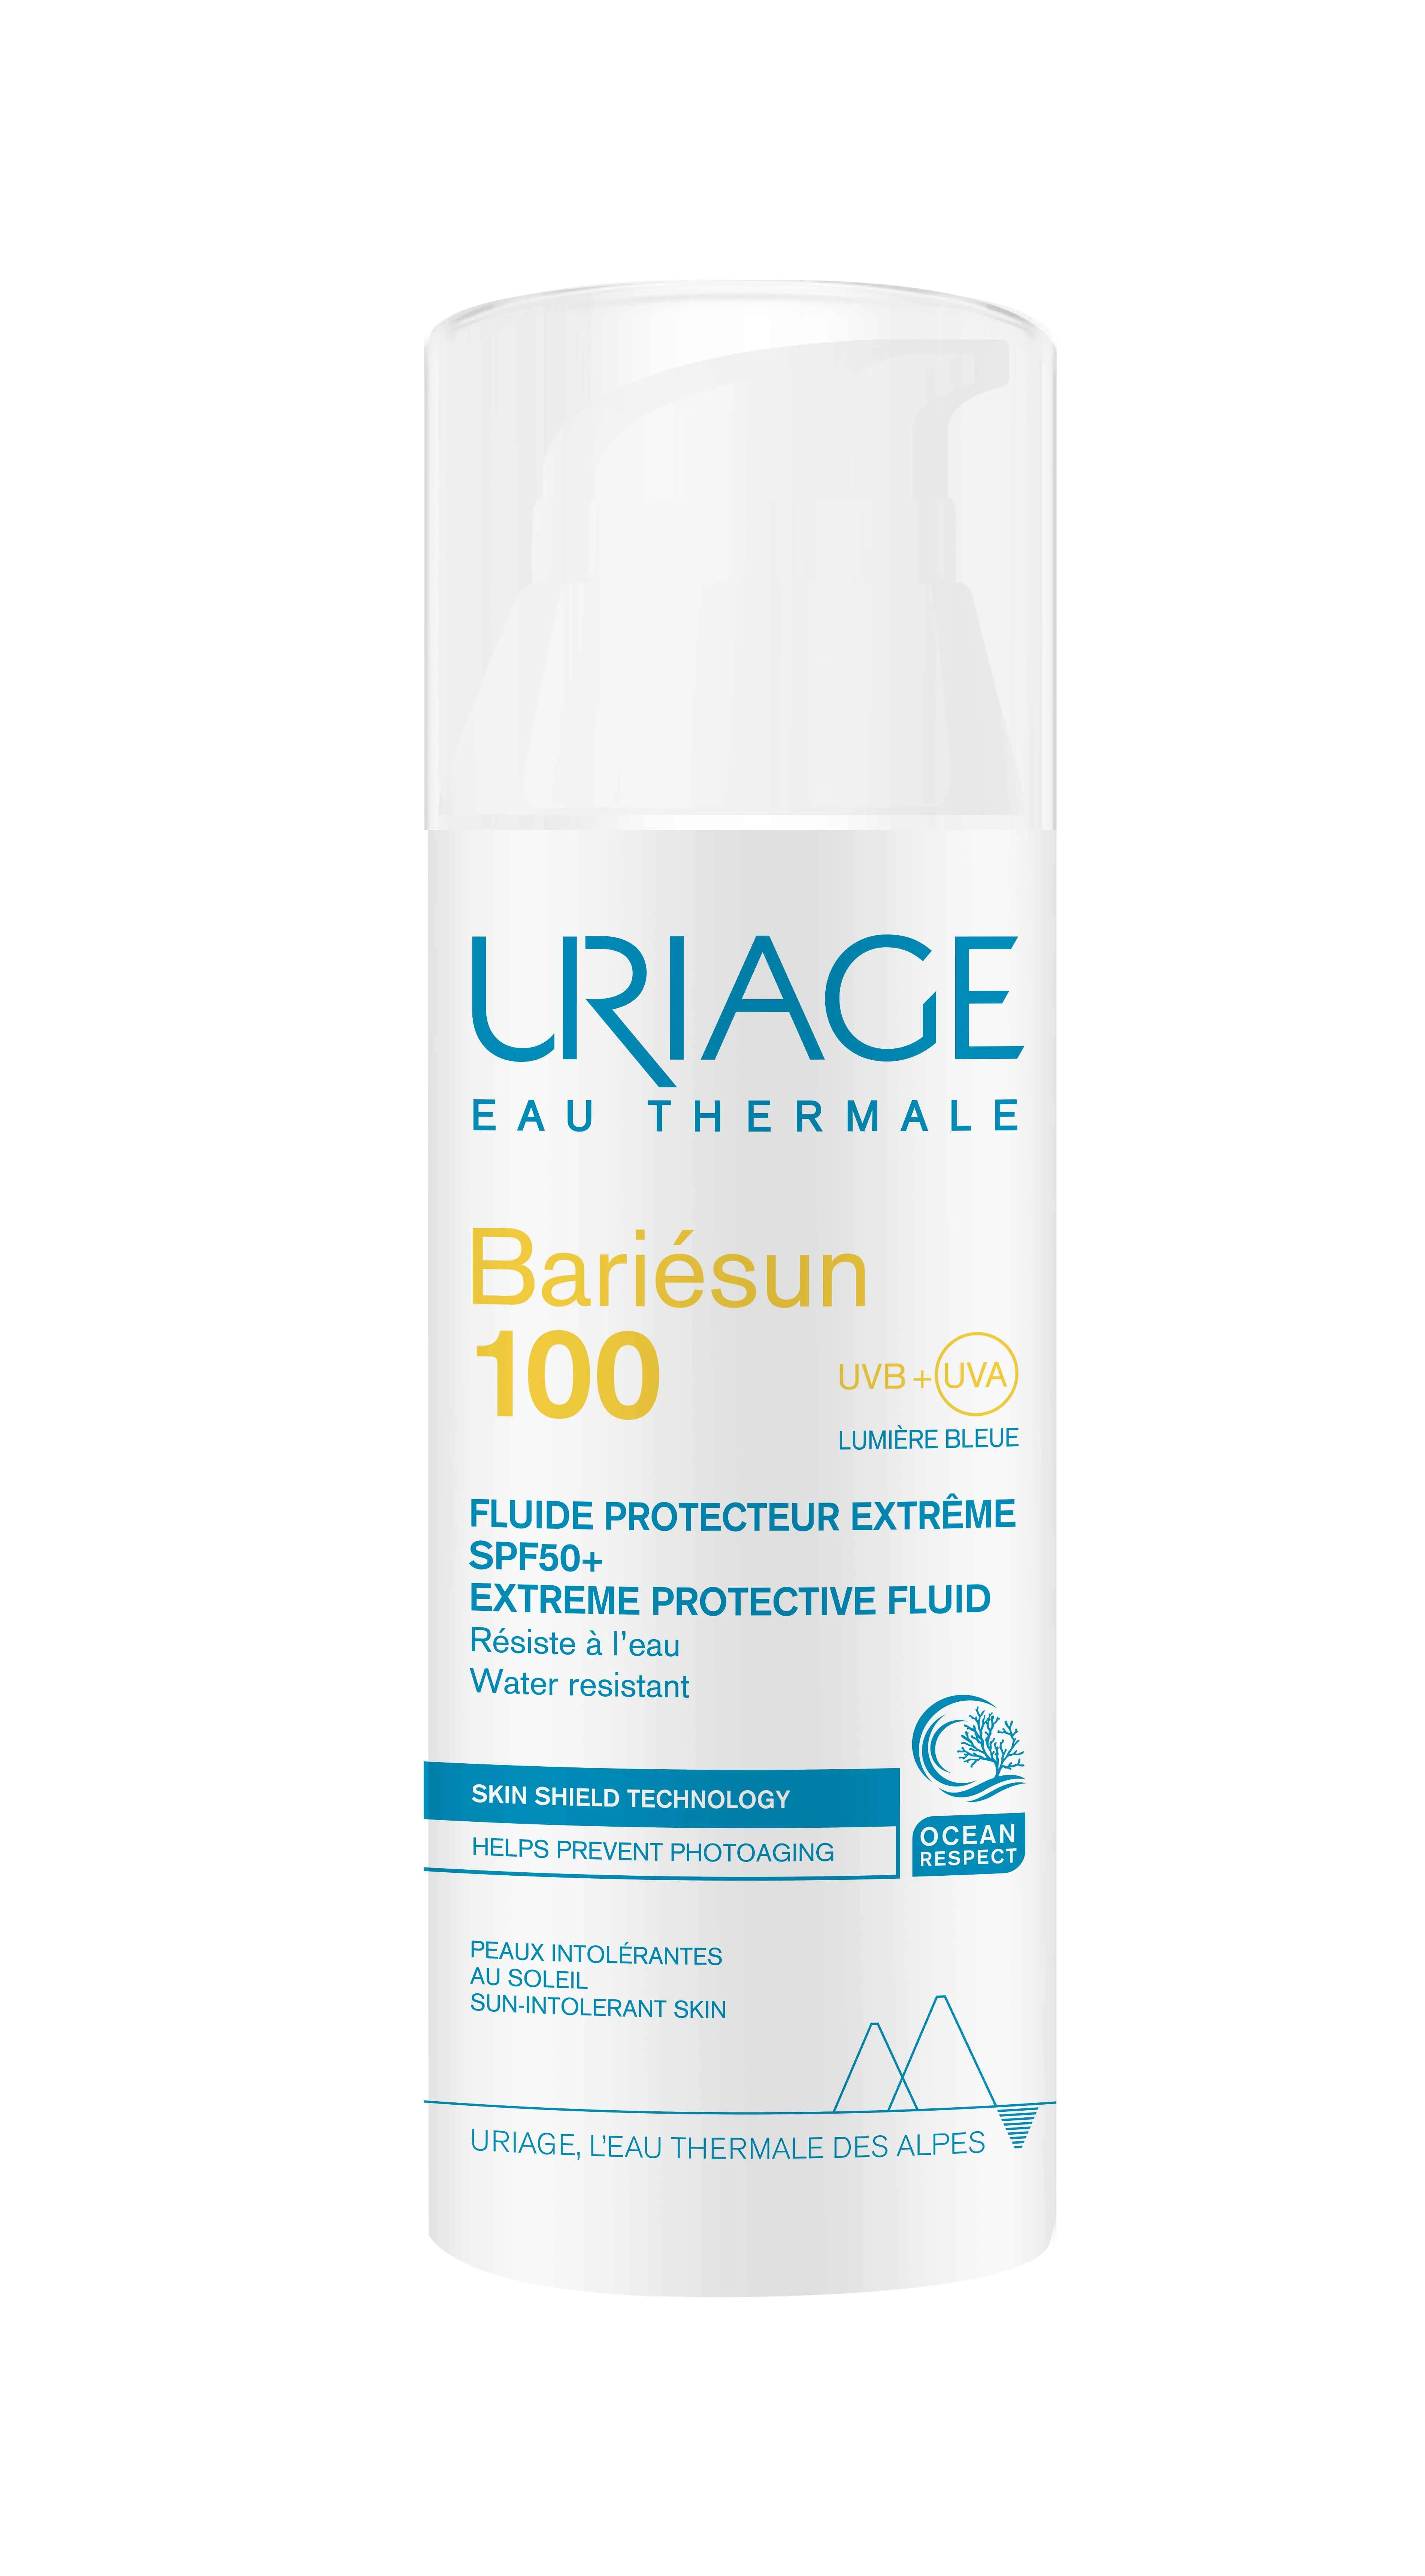 URIAGE BARIÉSUN100 protective fluid SPF50+